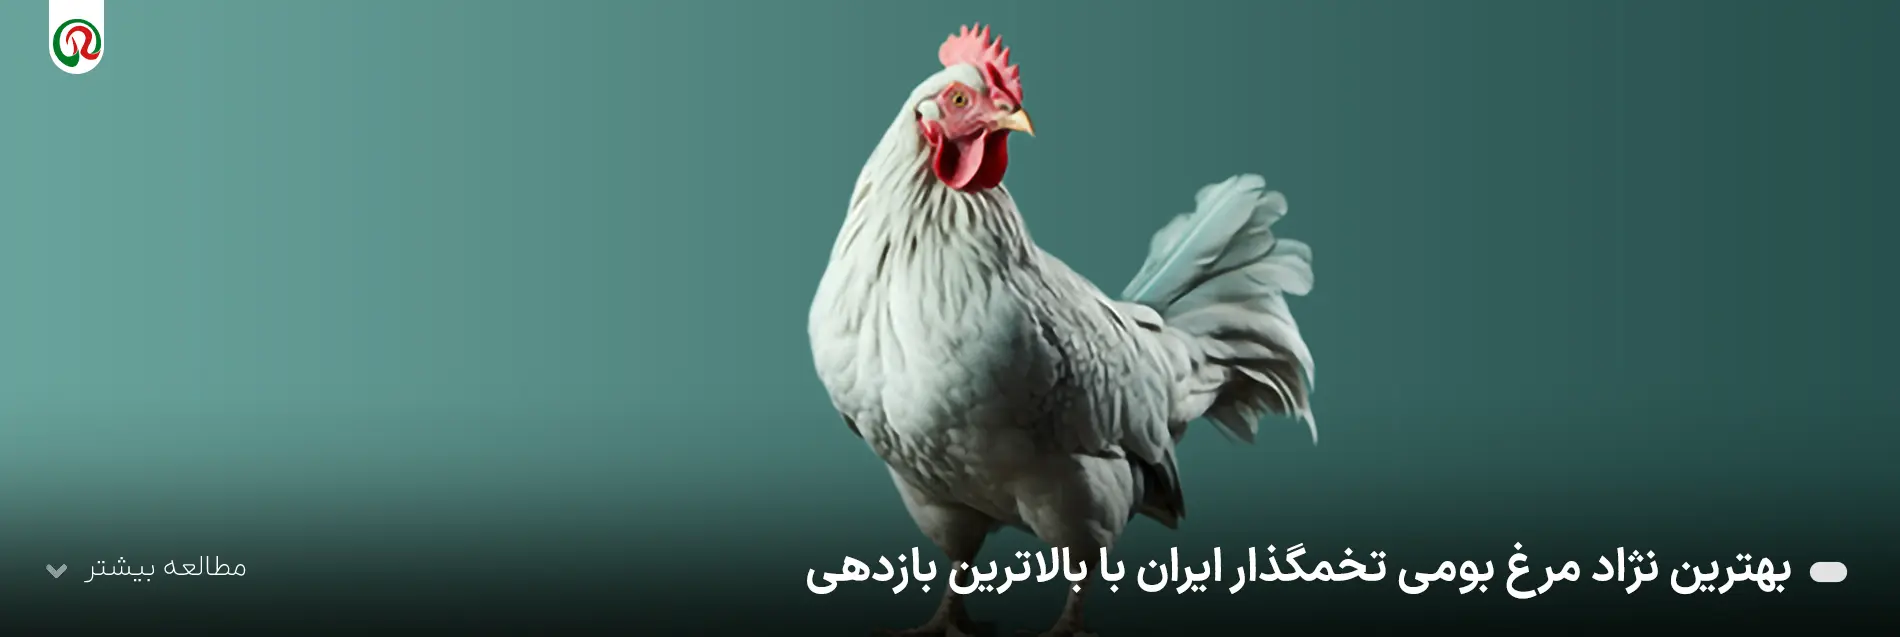 بهترین نژاد مرغ بومی تخمگذار ایران با بالاترین بازدهی